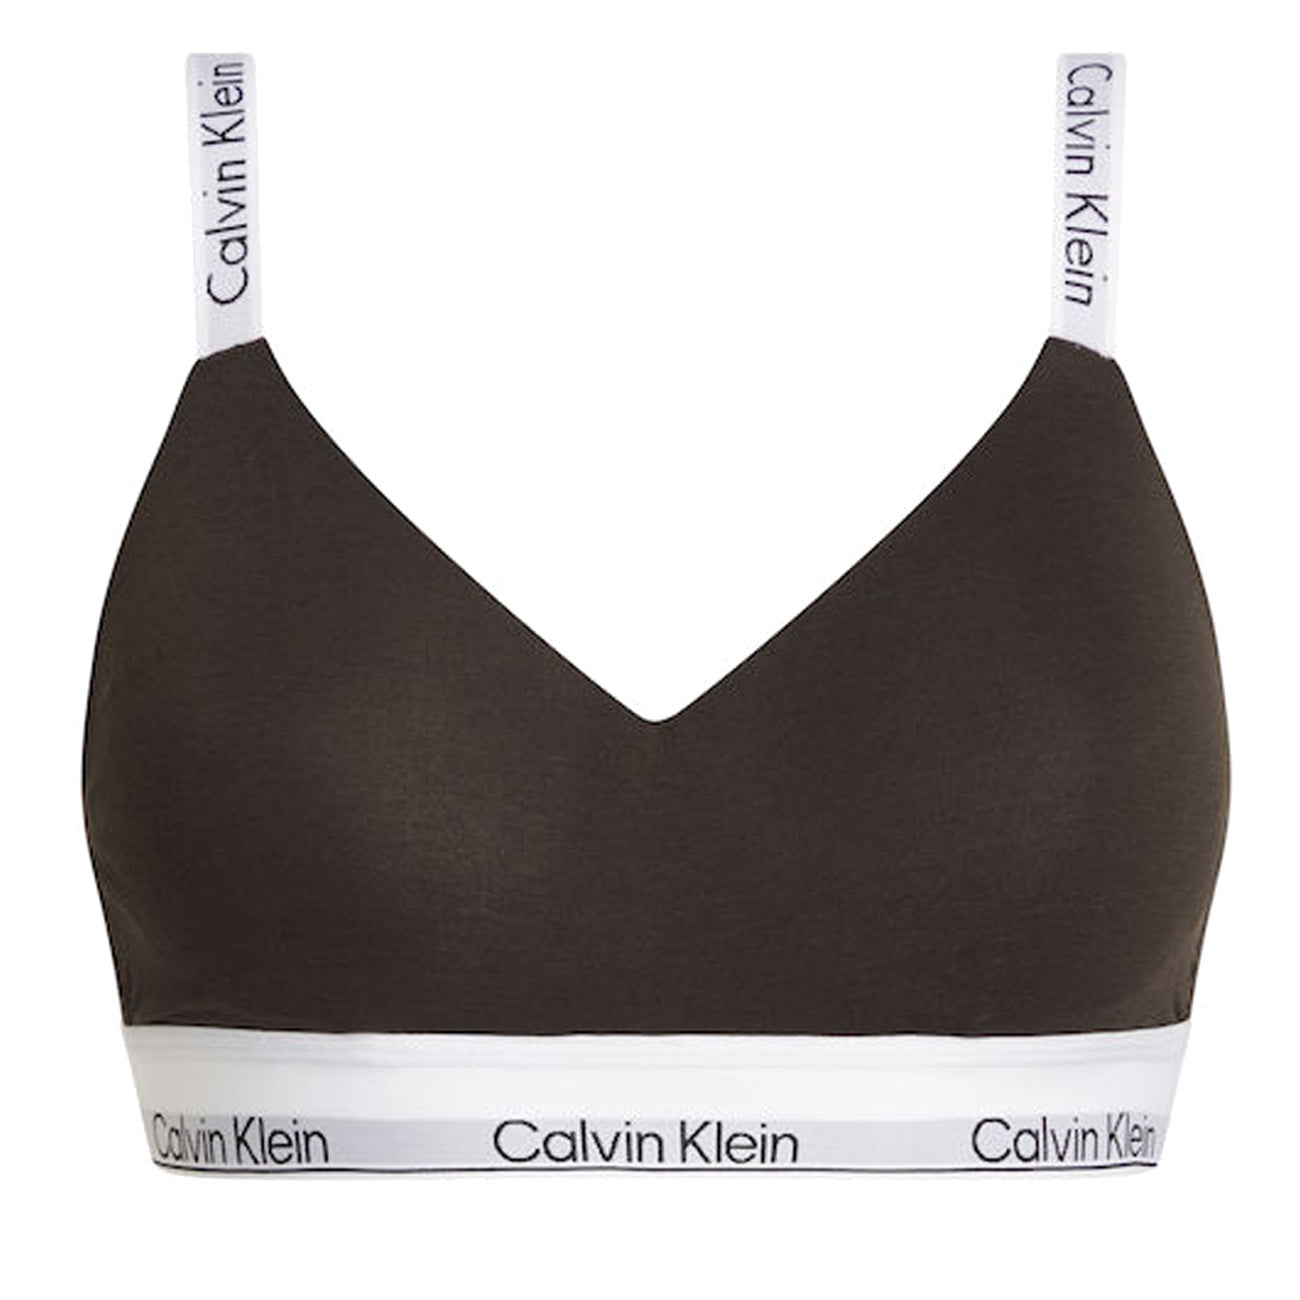 Calvin Klein Light Lined Bralette Modern Cotton BH Woodland